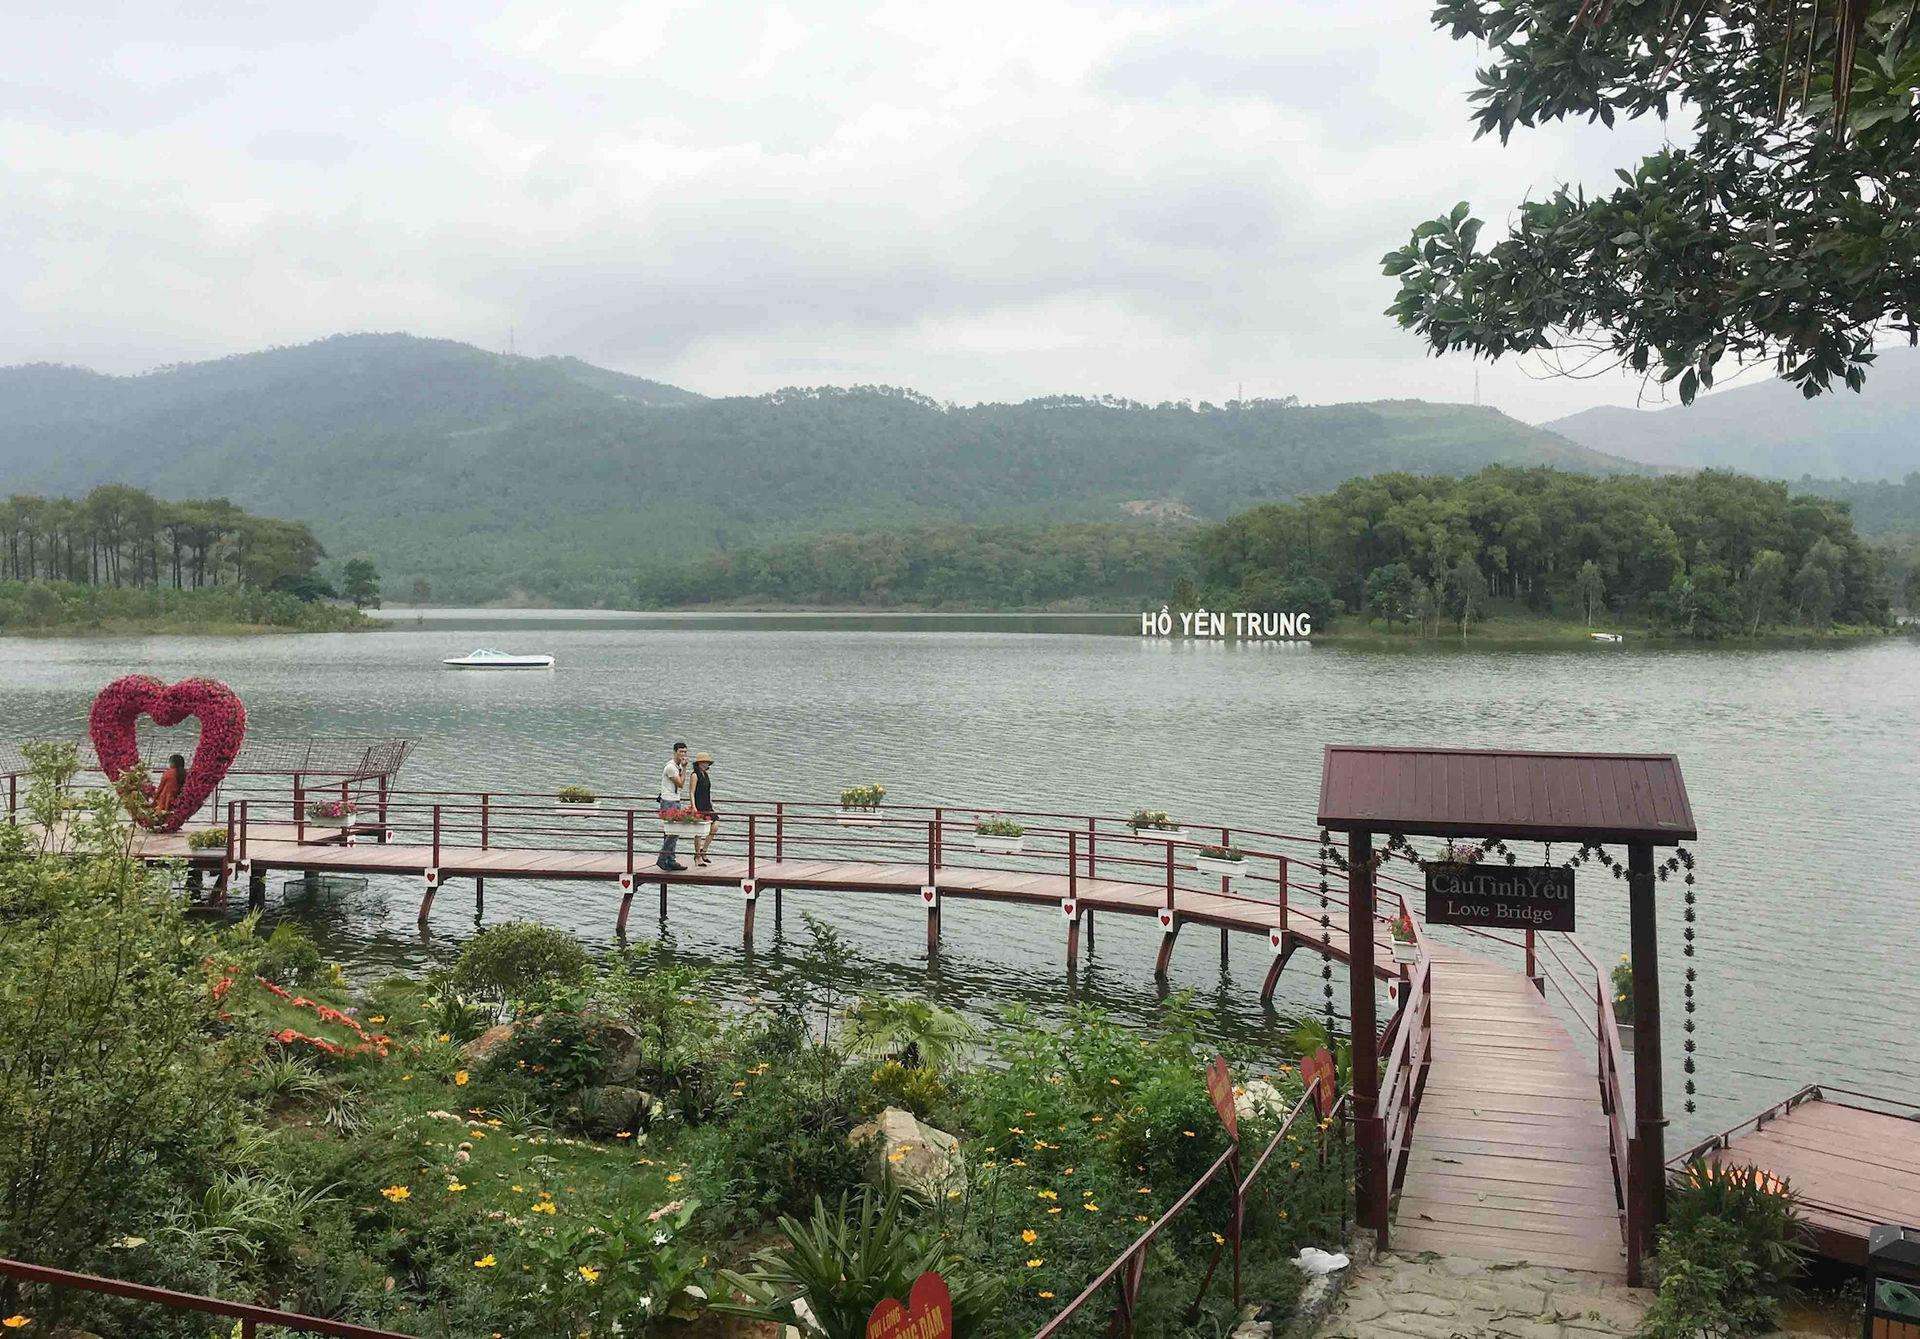 Hồ Yên Trung: Khám phá cảnh quan tuyệt đẹp của Hồ Yên Trung với những đường nét sắc sảo của thiên nhiên Việt Nam. Cùng đắm mình vào khung cảnh hữu tình, tận hưởng khoảnh khắc bình yên và đầy lãng mạn.